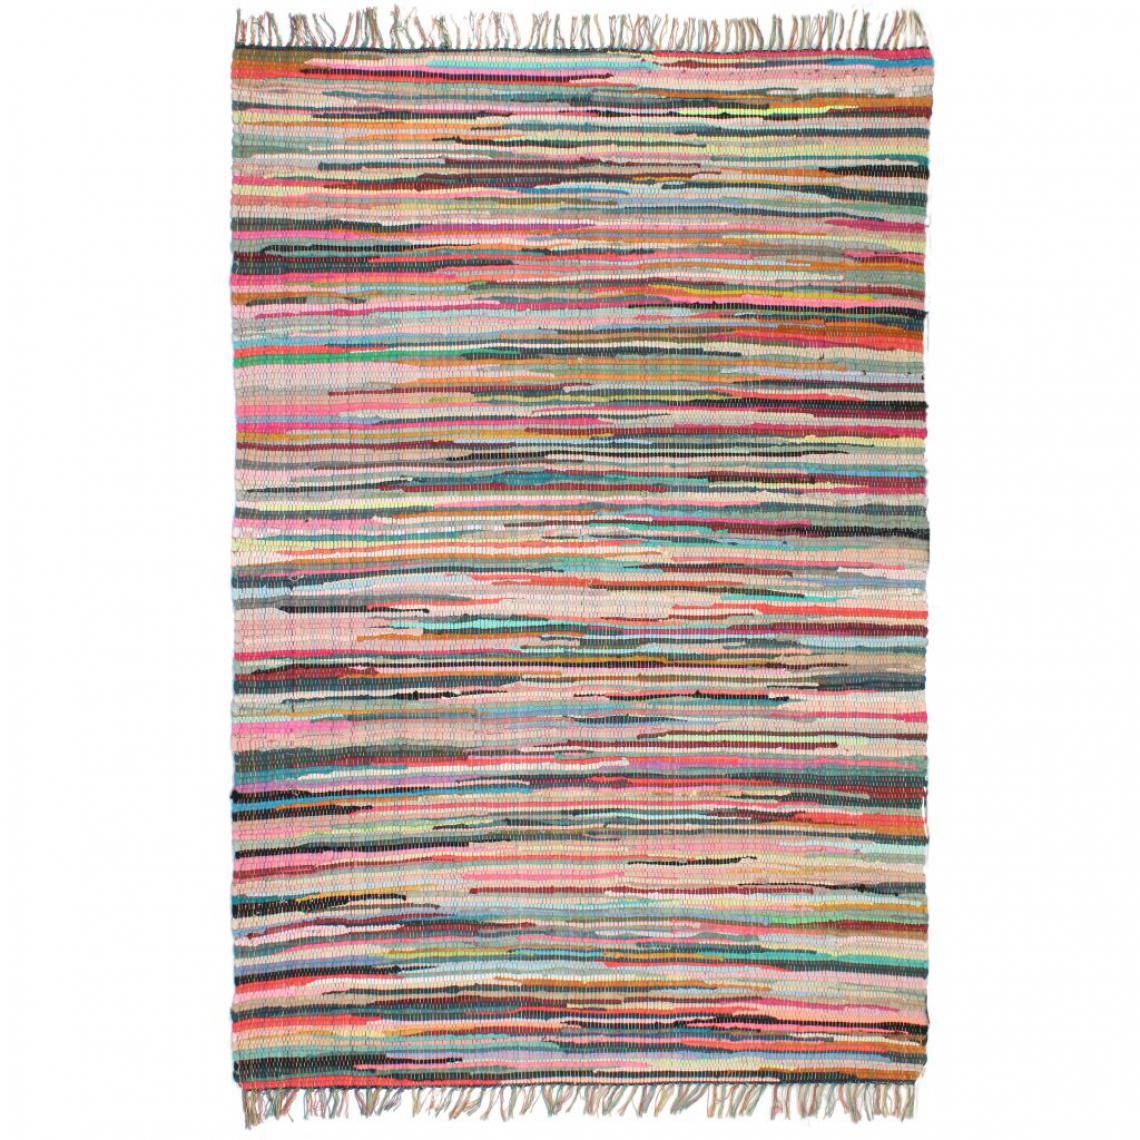 Chunhelife - Tapis Chindi Coton tissé à la main 120 x 170 cm Multicolore - Tapis